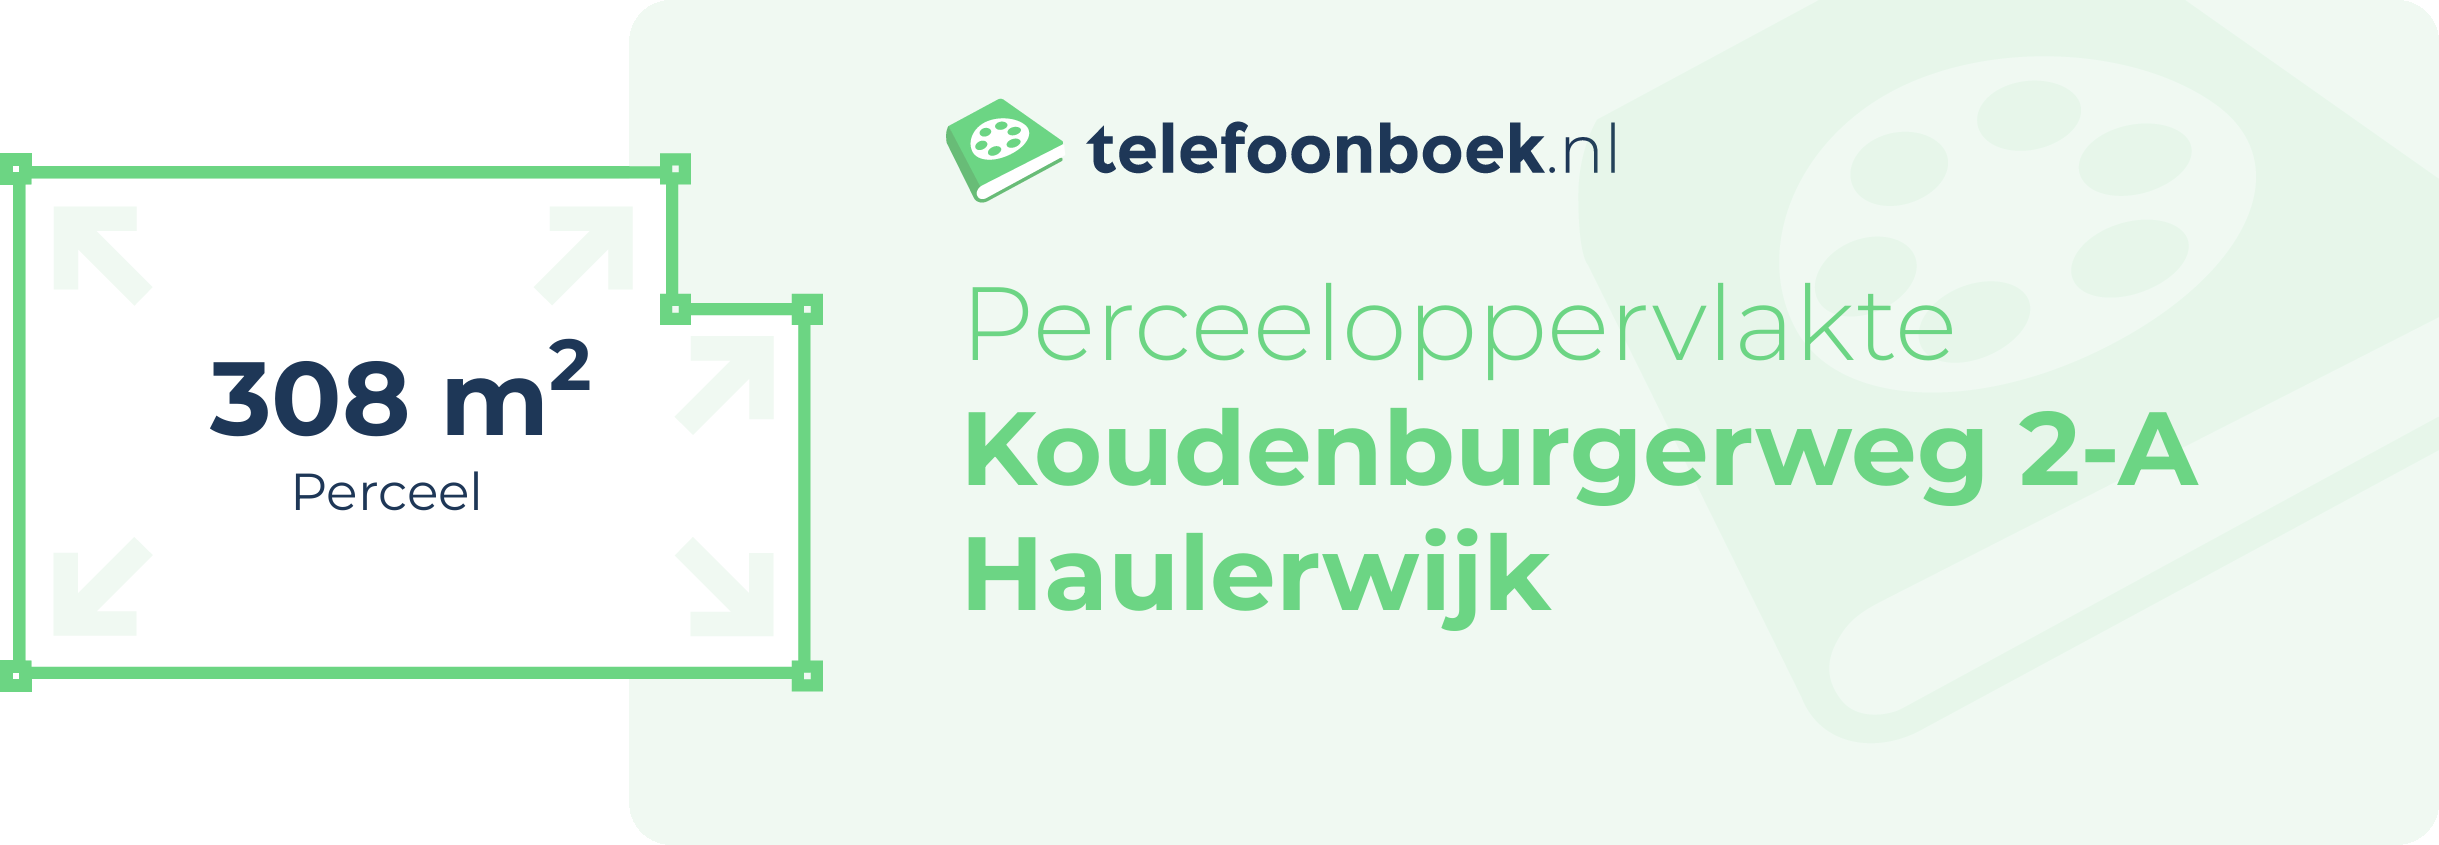 Perceeloppervlakte Koudenburgerweg 2-A Haulerwijk